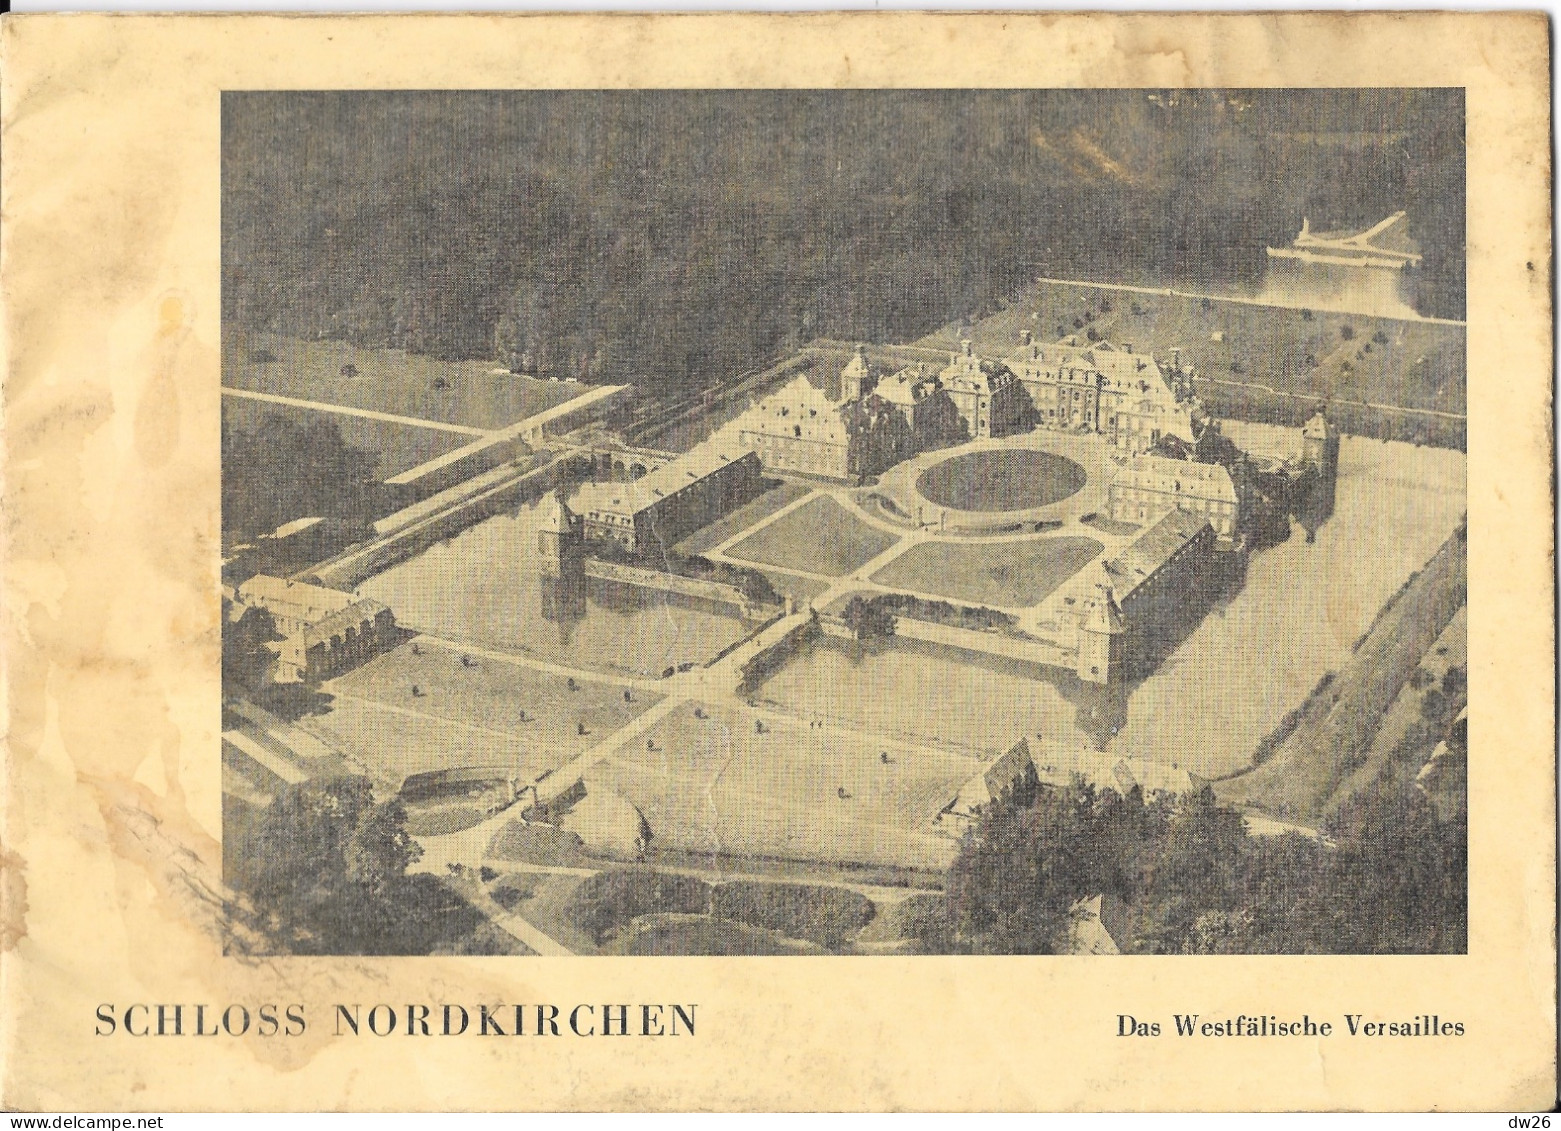 Dépliant Touristique: Schloss Nordkirchen (Das Westfälische Versailles) Le Versailles Allemand, Livret 20 Pages - Tourism Brochures